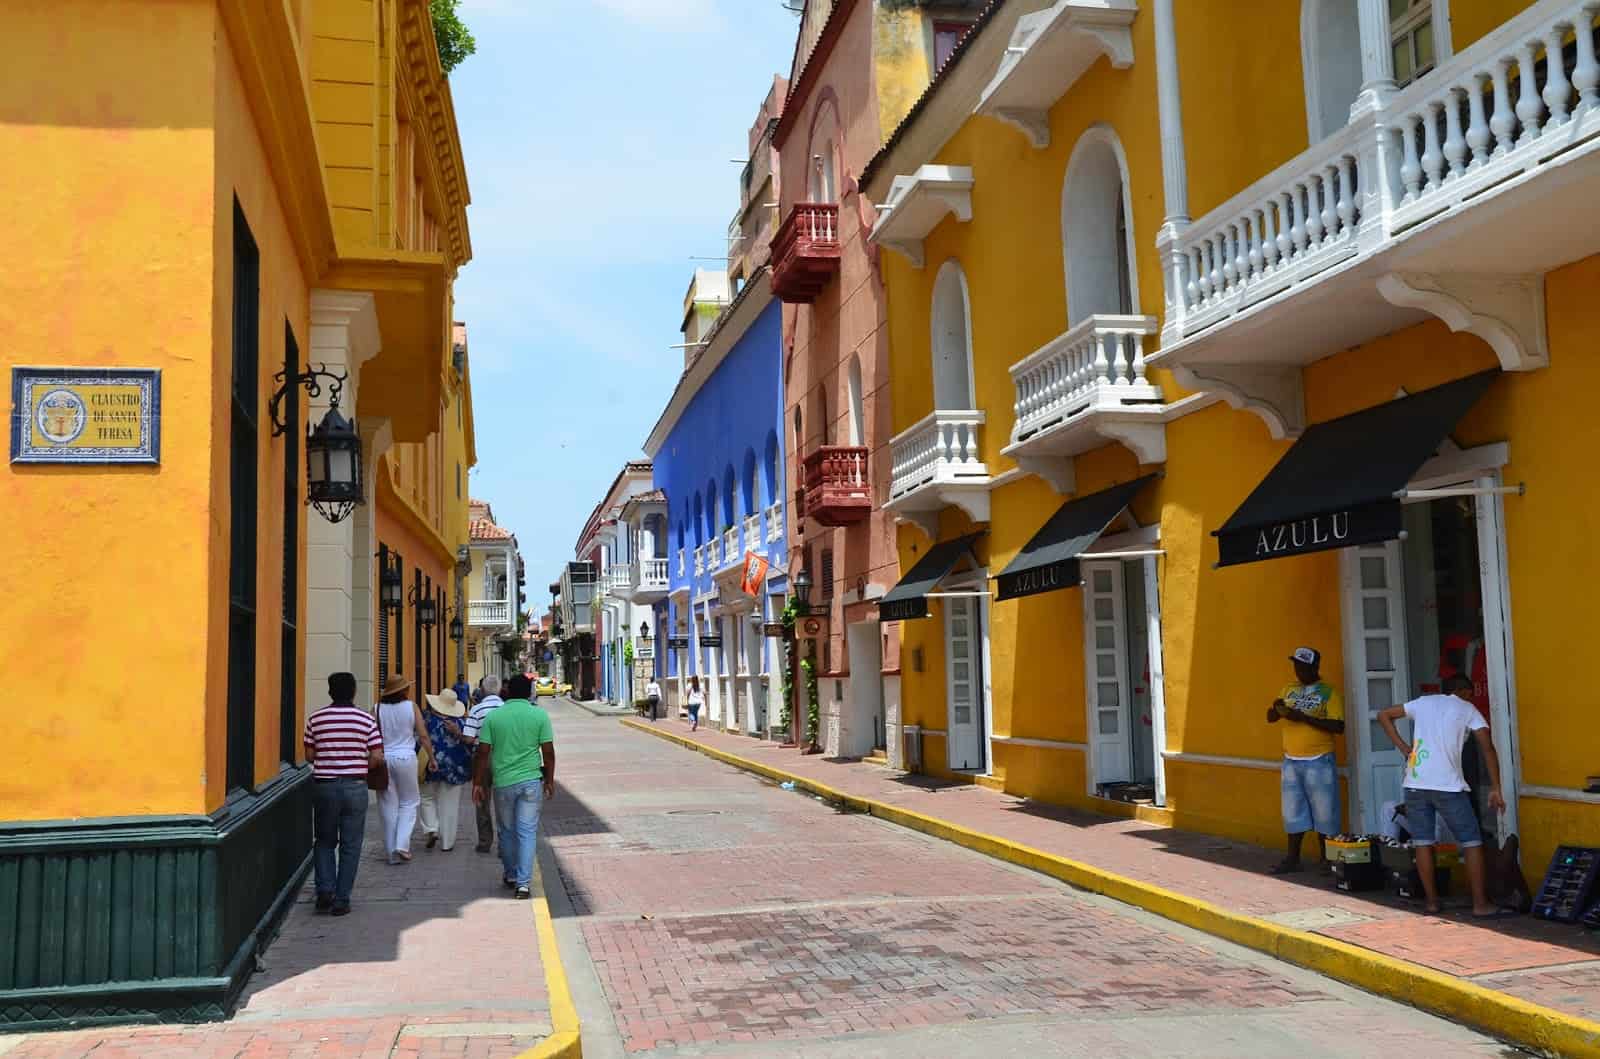 Calle Ricaurte in El Centro, Cartagena, Colombia